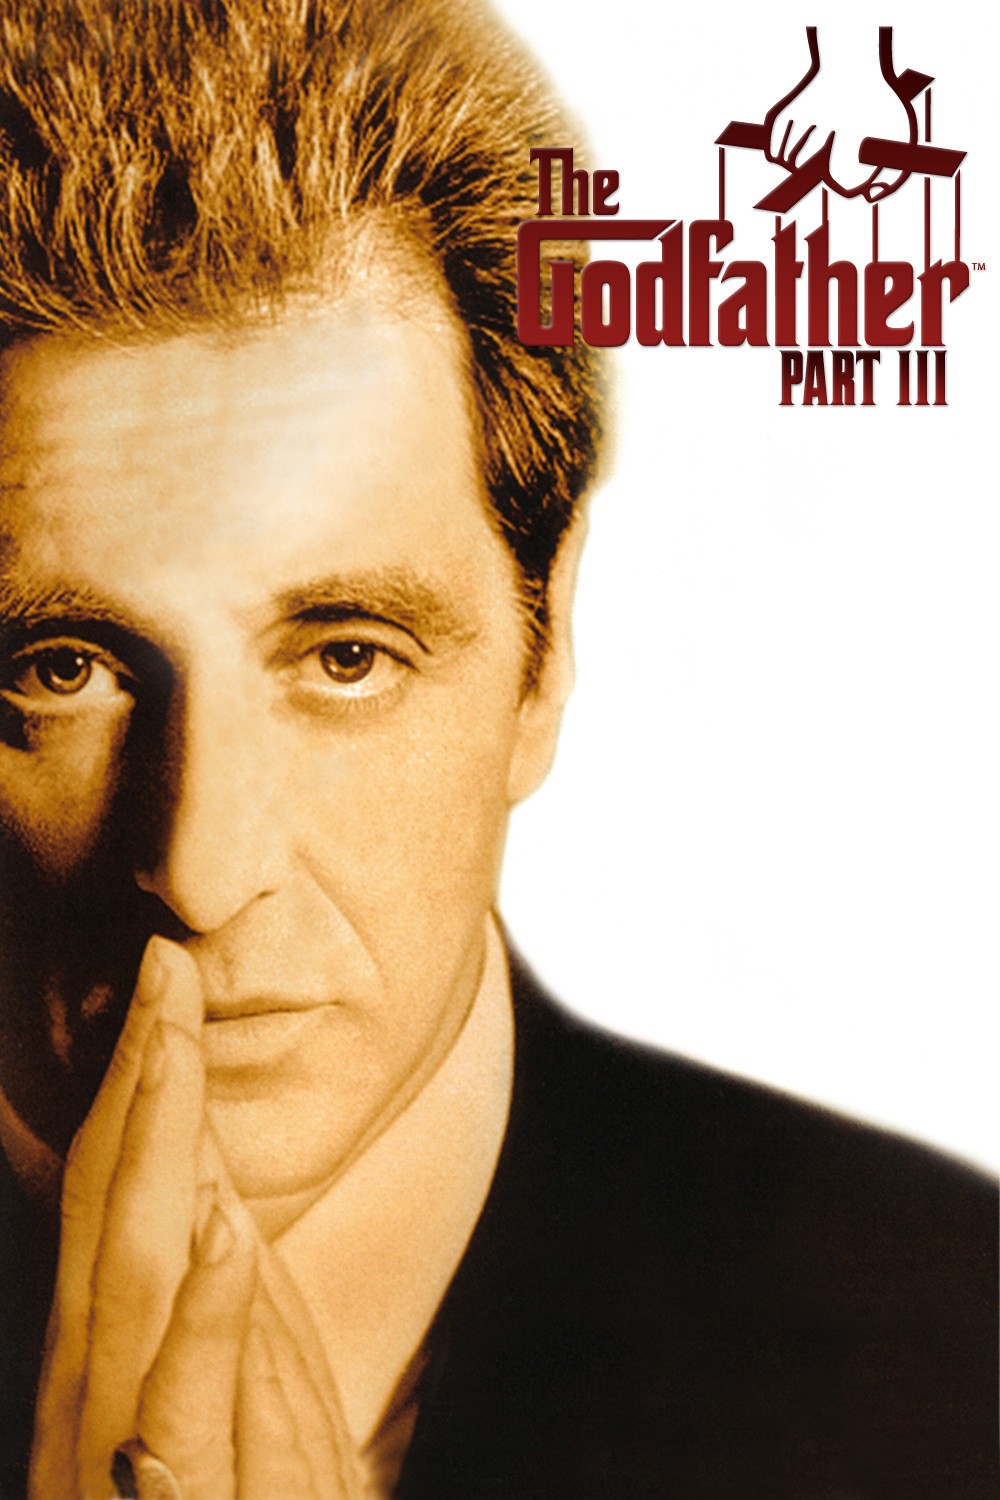 [教父第三集 / 教父 III / 马里奥·普佐的教父终章：迈克·柯里昂之死 / Mario Puzo’s The Godfather, Coda: The Death of Michael Corleone/教父3 The Godfather: Part III][1990][美国][剧情][英语 / 意大利语 / 德语 / 拉丁语]